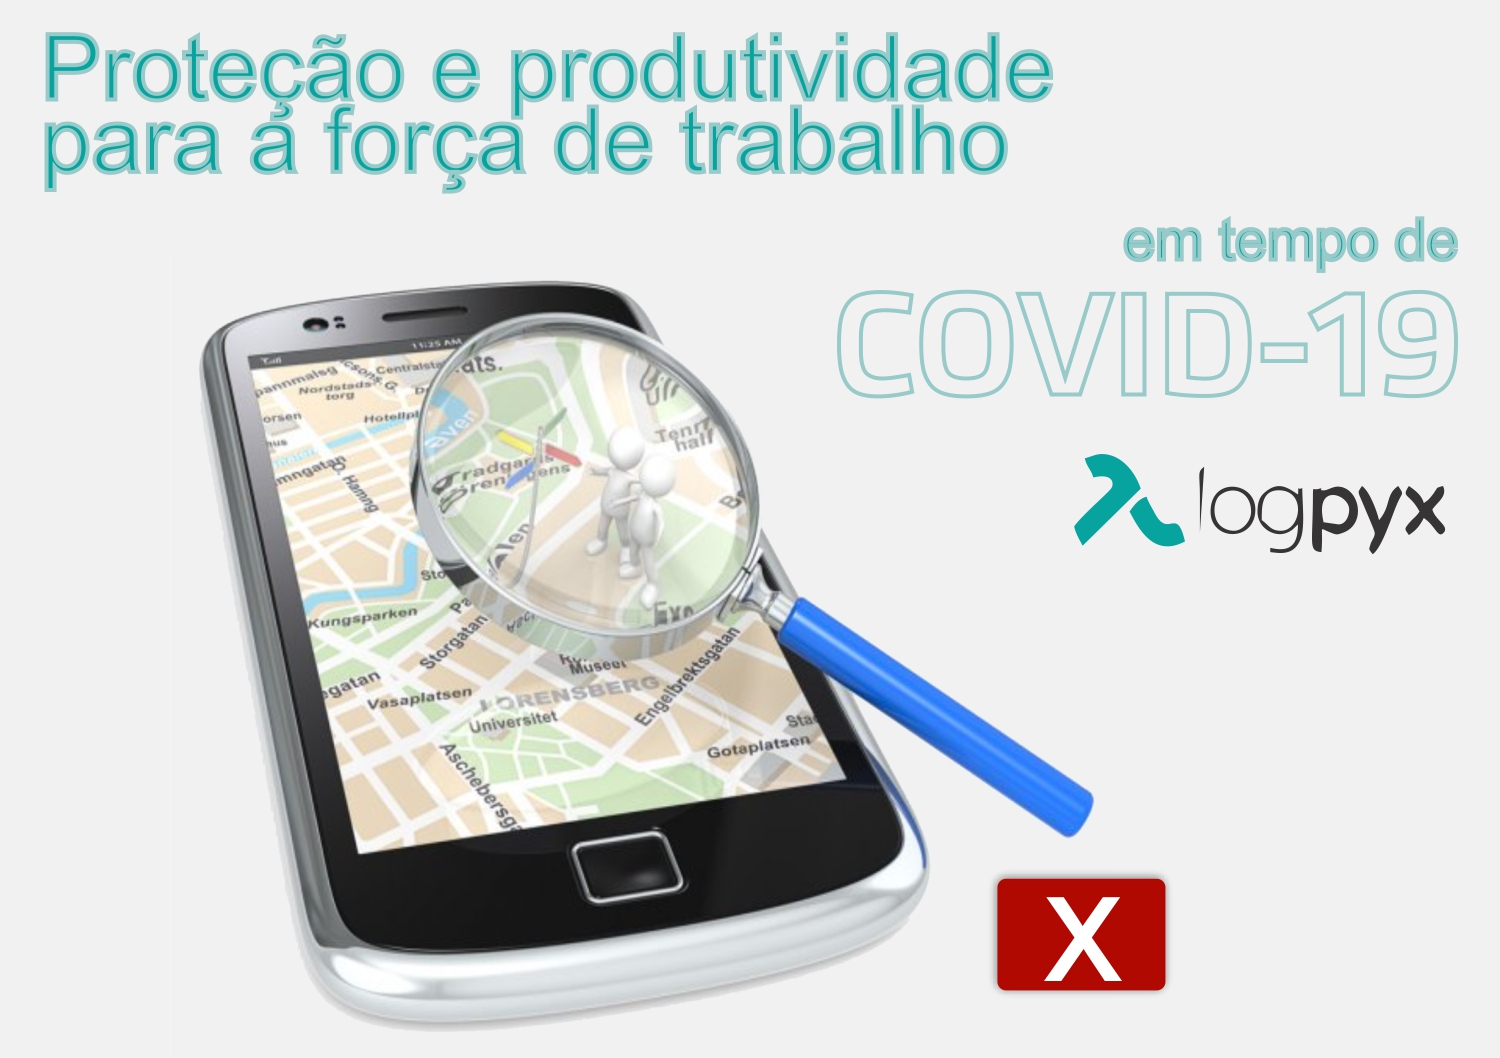 Porque não usar os aplicativos de celular que usam GPS para reduzir o COVID-19. - Logpyx